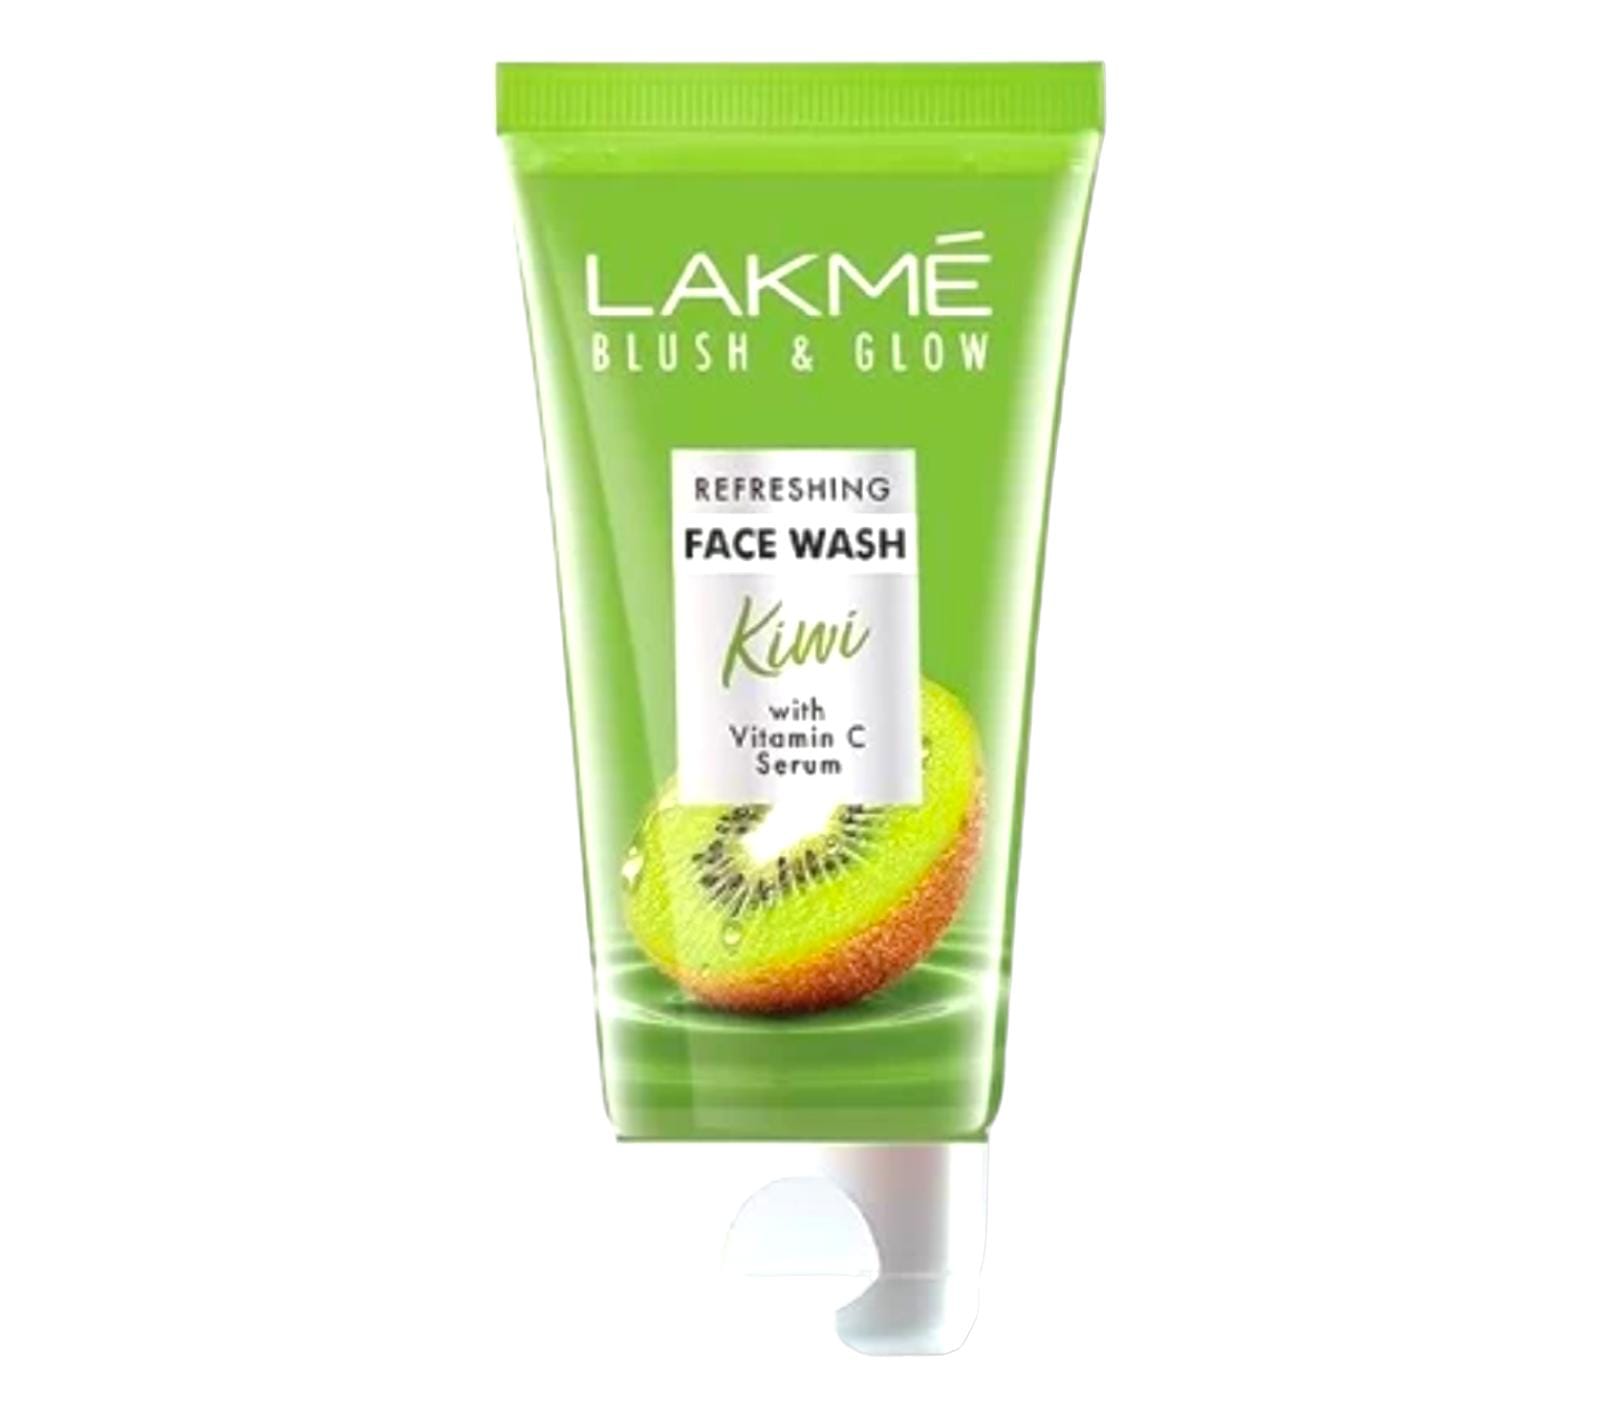 Lakme Refreshing Face wash